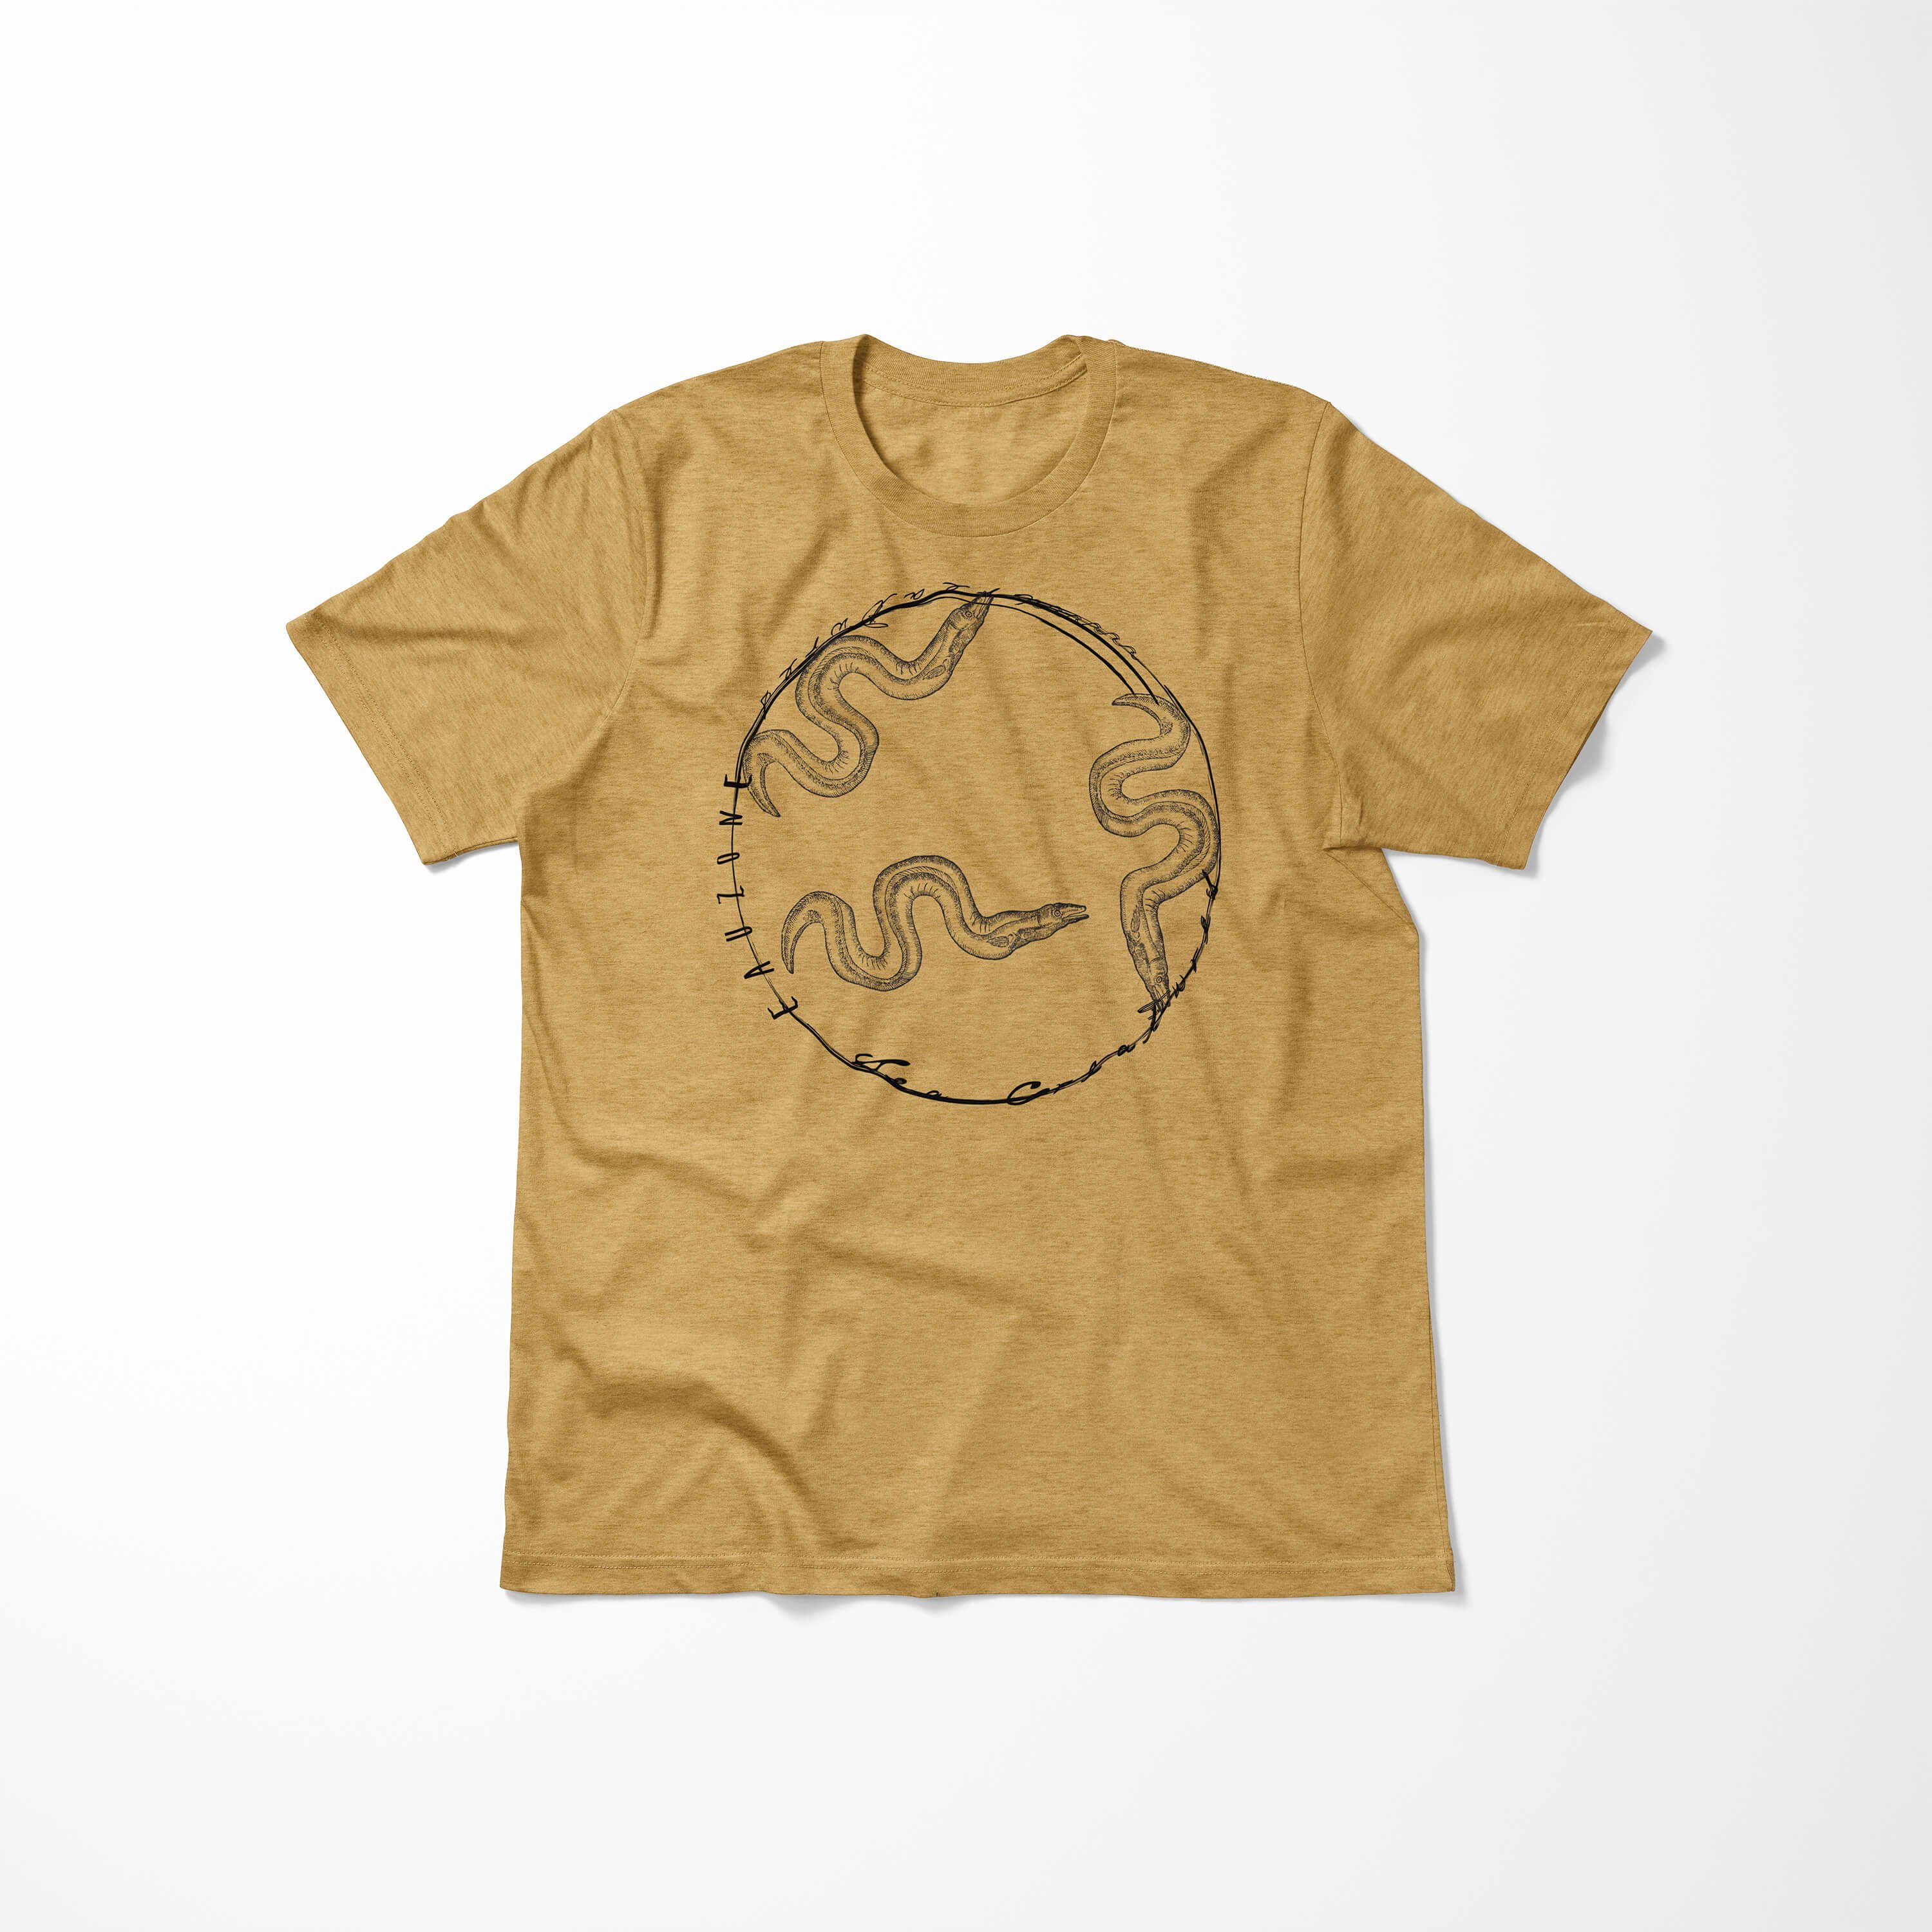 Fische Tiefsee - Struktur Antique T-Shirt und Sea Sinus / Art Serie: T-Shirt feine sportlicher Sea Creatures, Schnitt 093 Gold